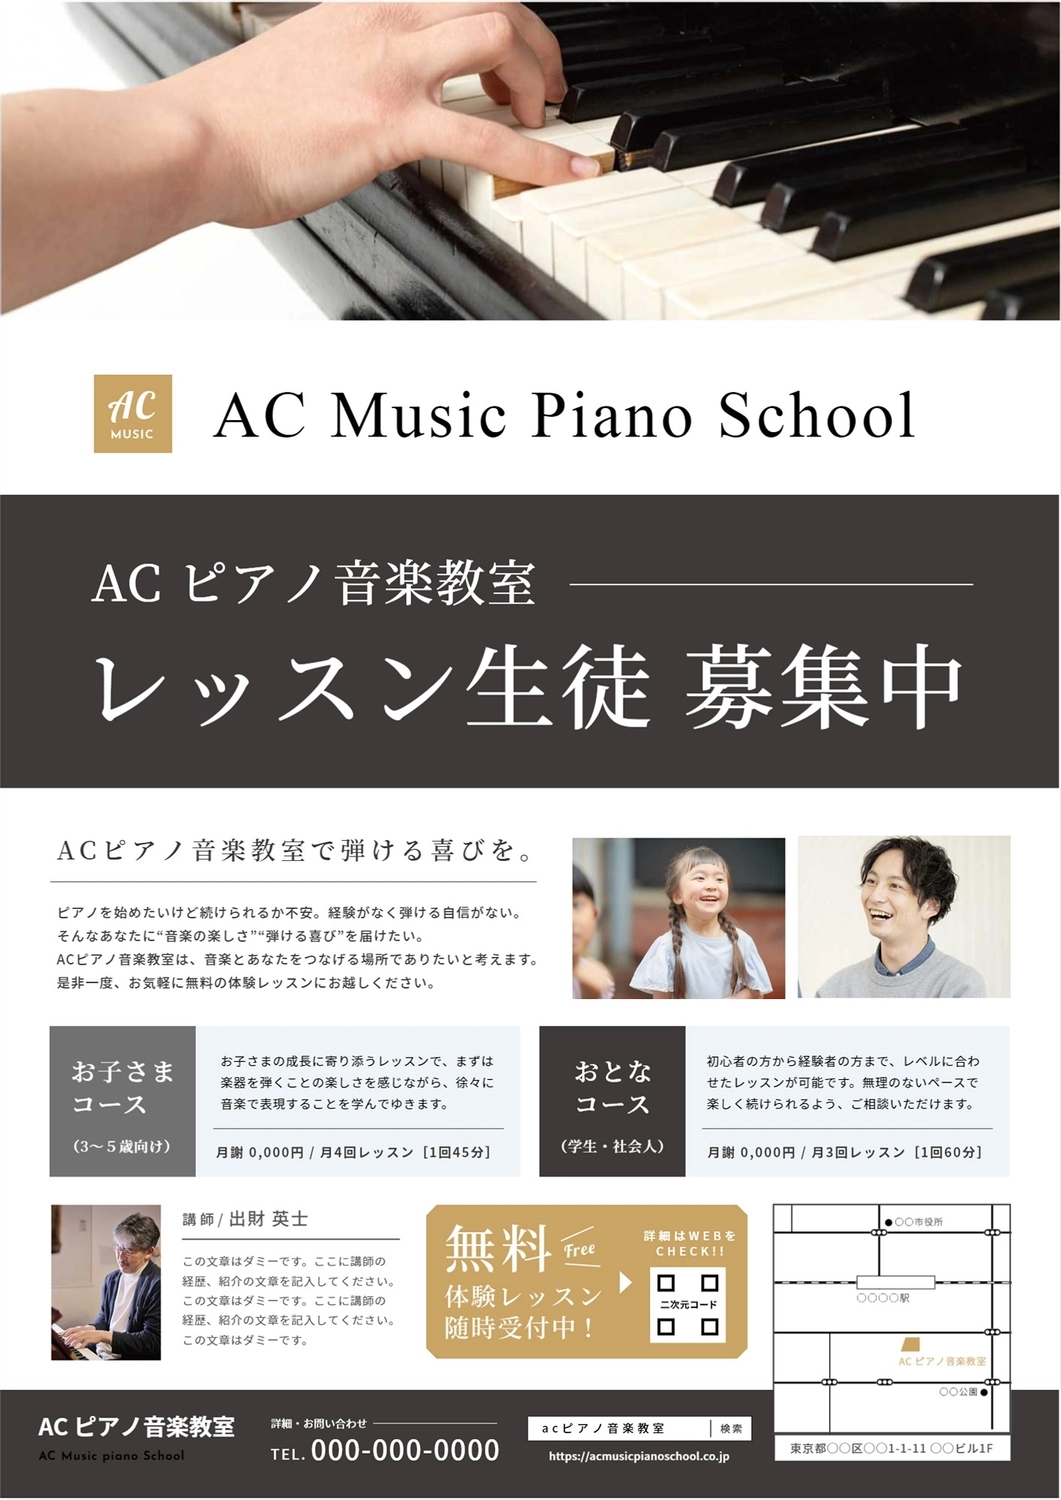 ピアノ教室生徒募集（写真、手元）, create, edit, design, Flyer template